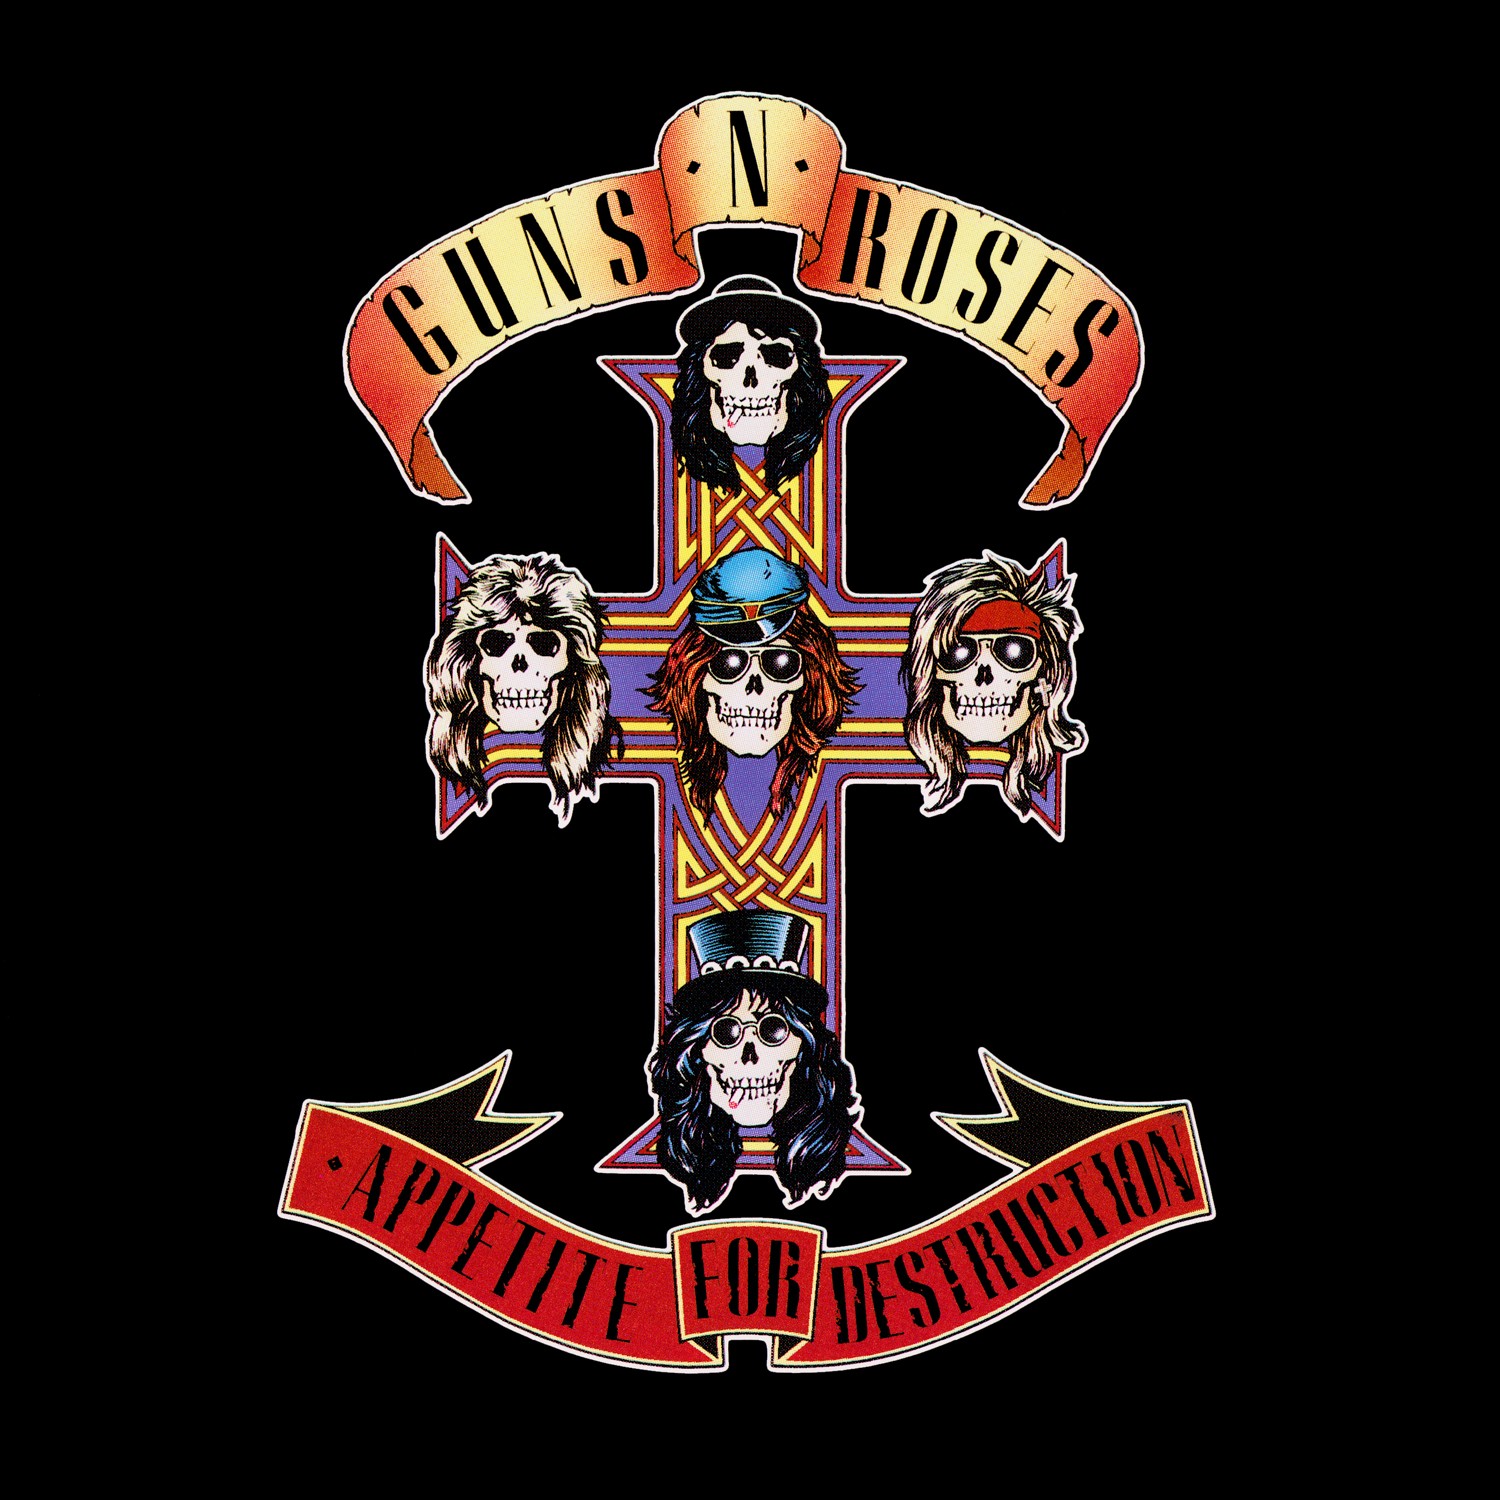 Guns N’ Roses – Appetite for Destruction (1987)